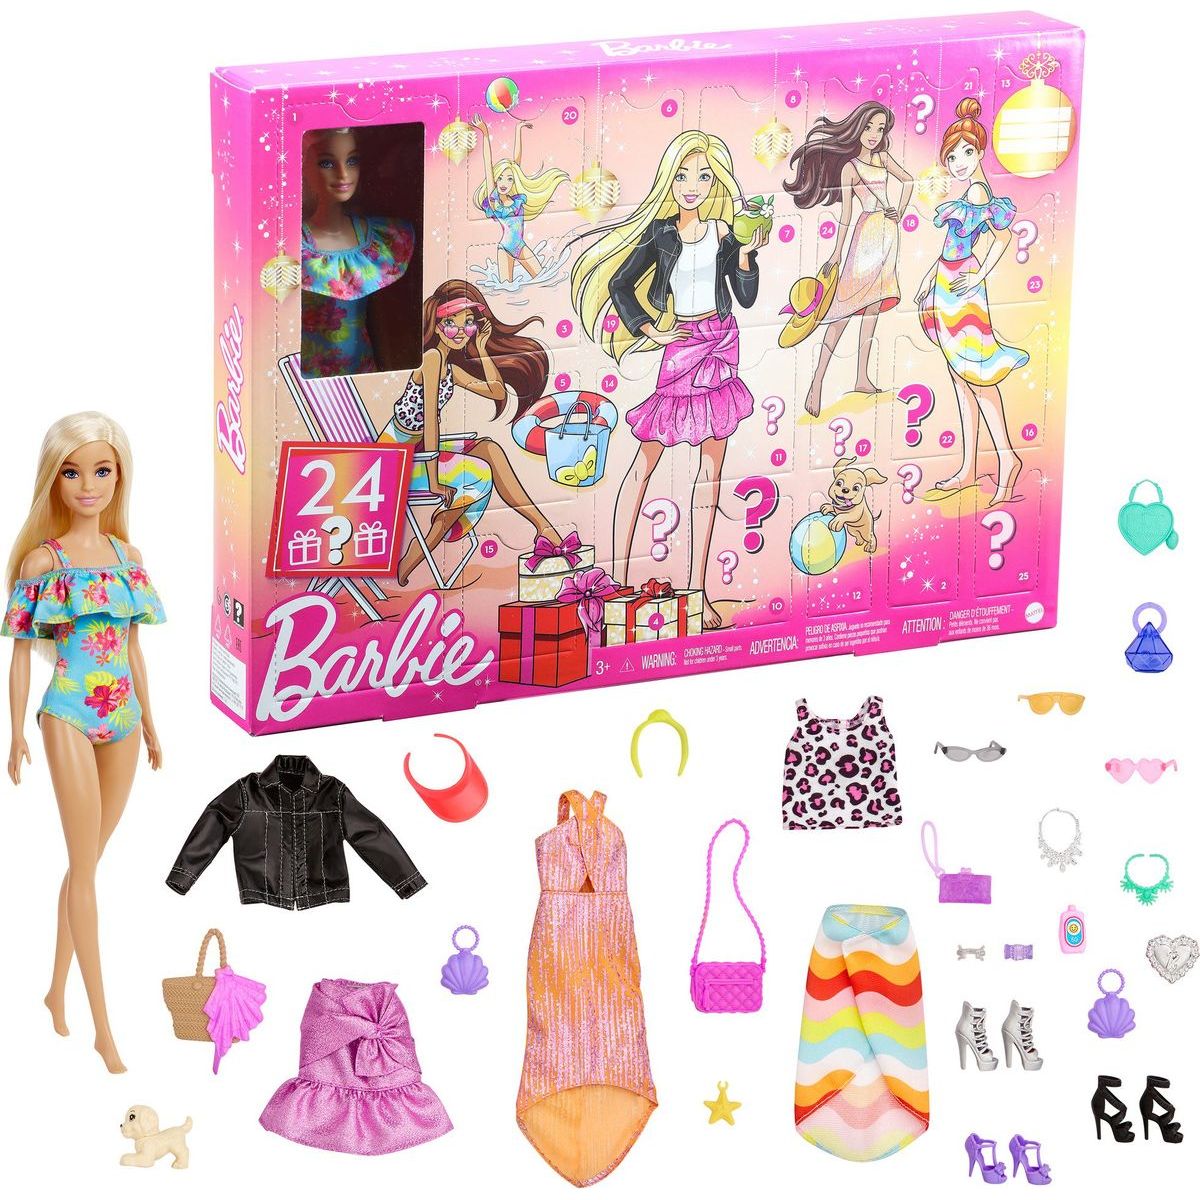 Mattel Barbie adventní kalendář Fashion